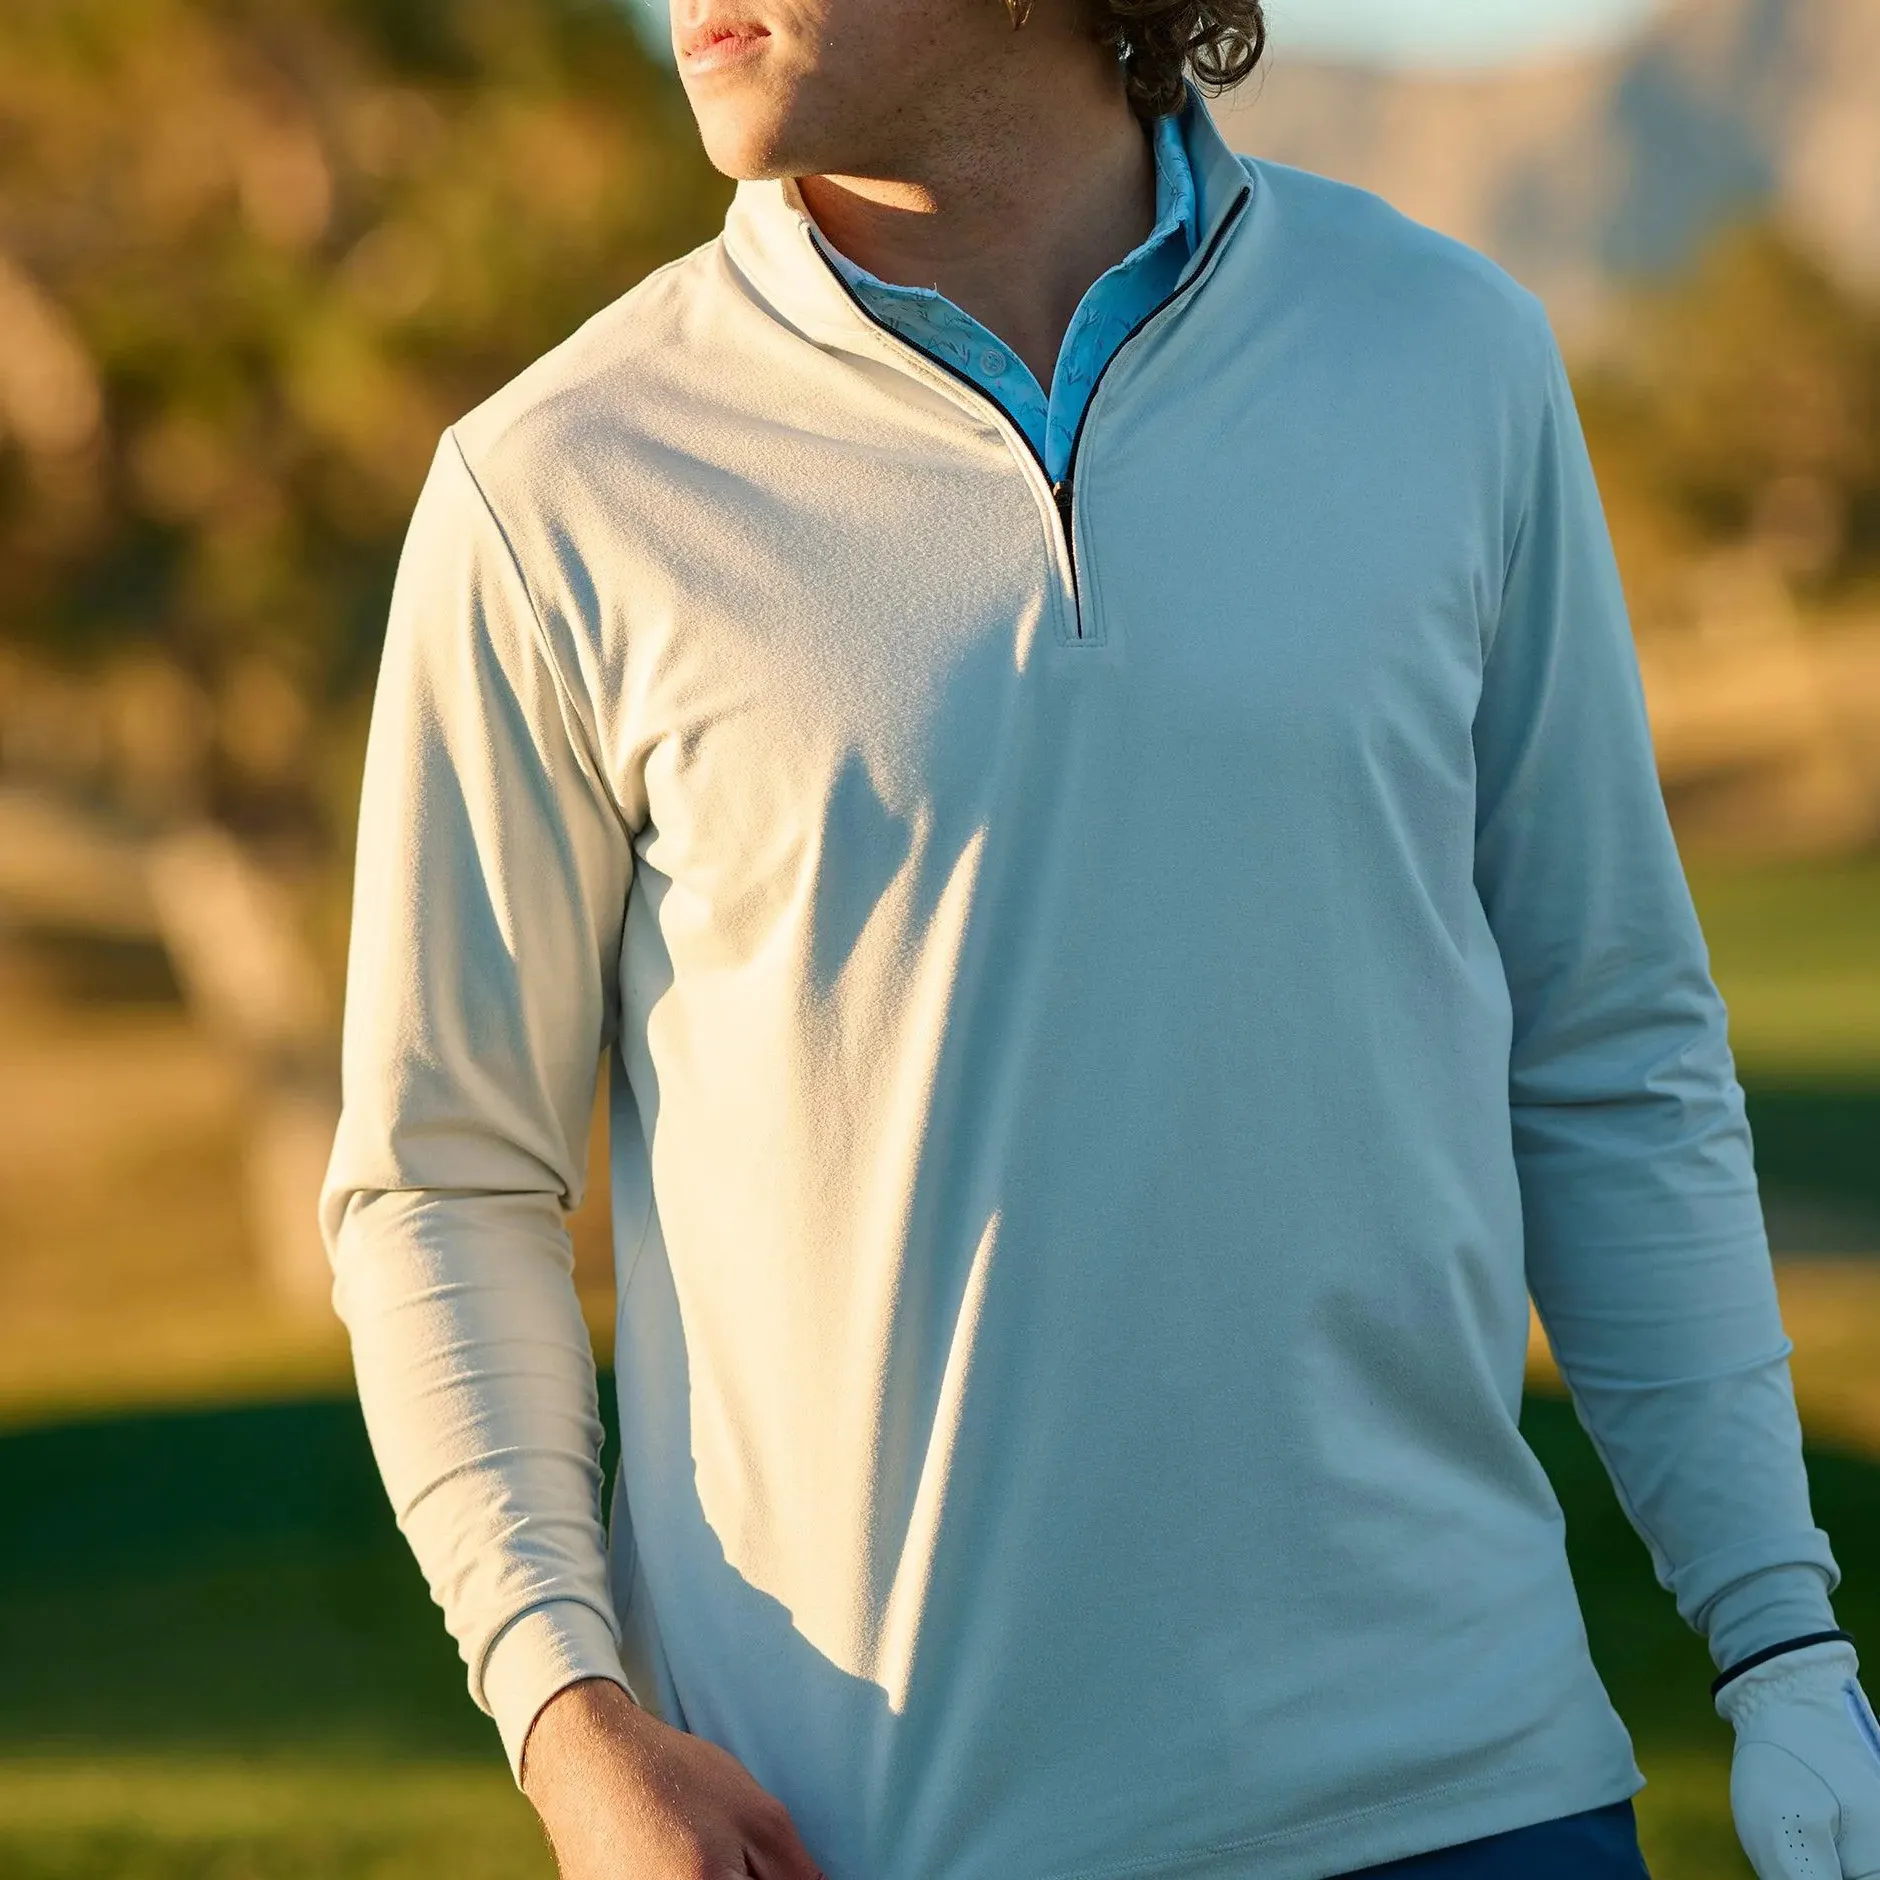 골프 하프 지퍼 폴로 셔츠 도매 사용자 정의 자신의 디자인/색상/패브릭 남성 패션 스포츠웨어 폴로 셔츠 골프 쿼터 지퍼